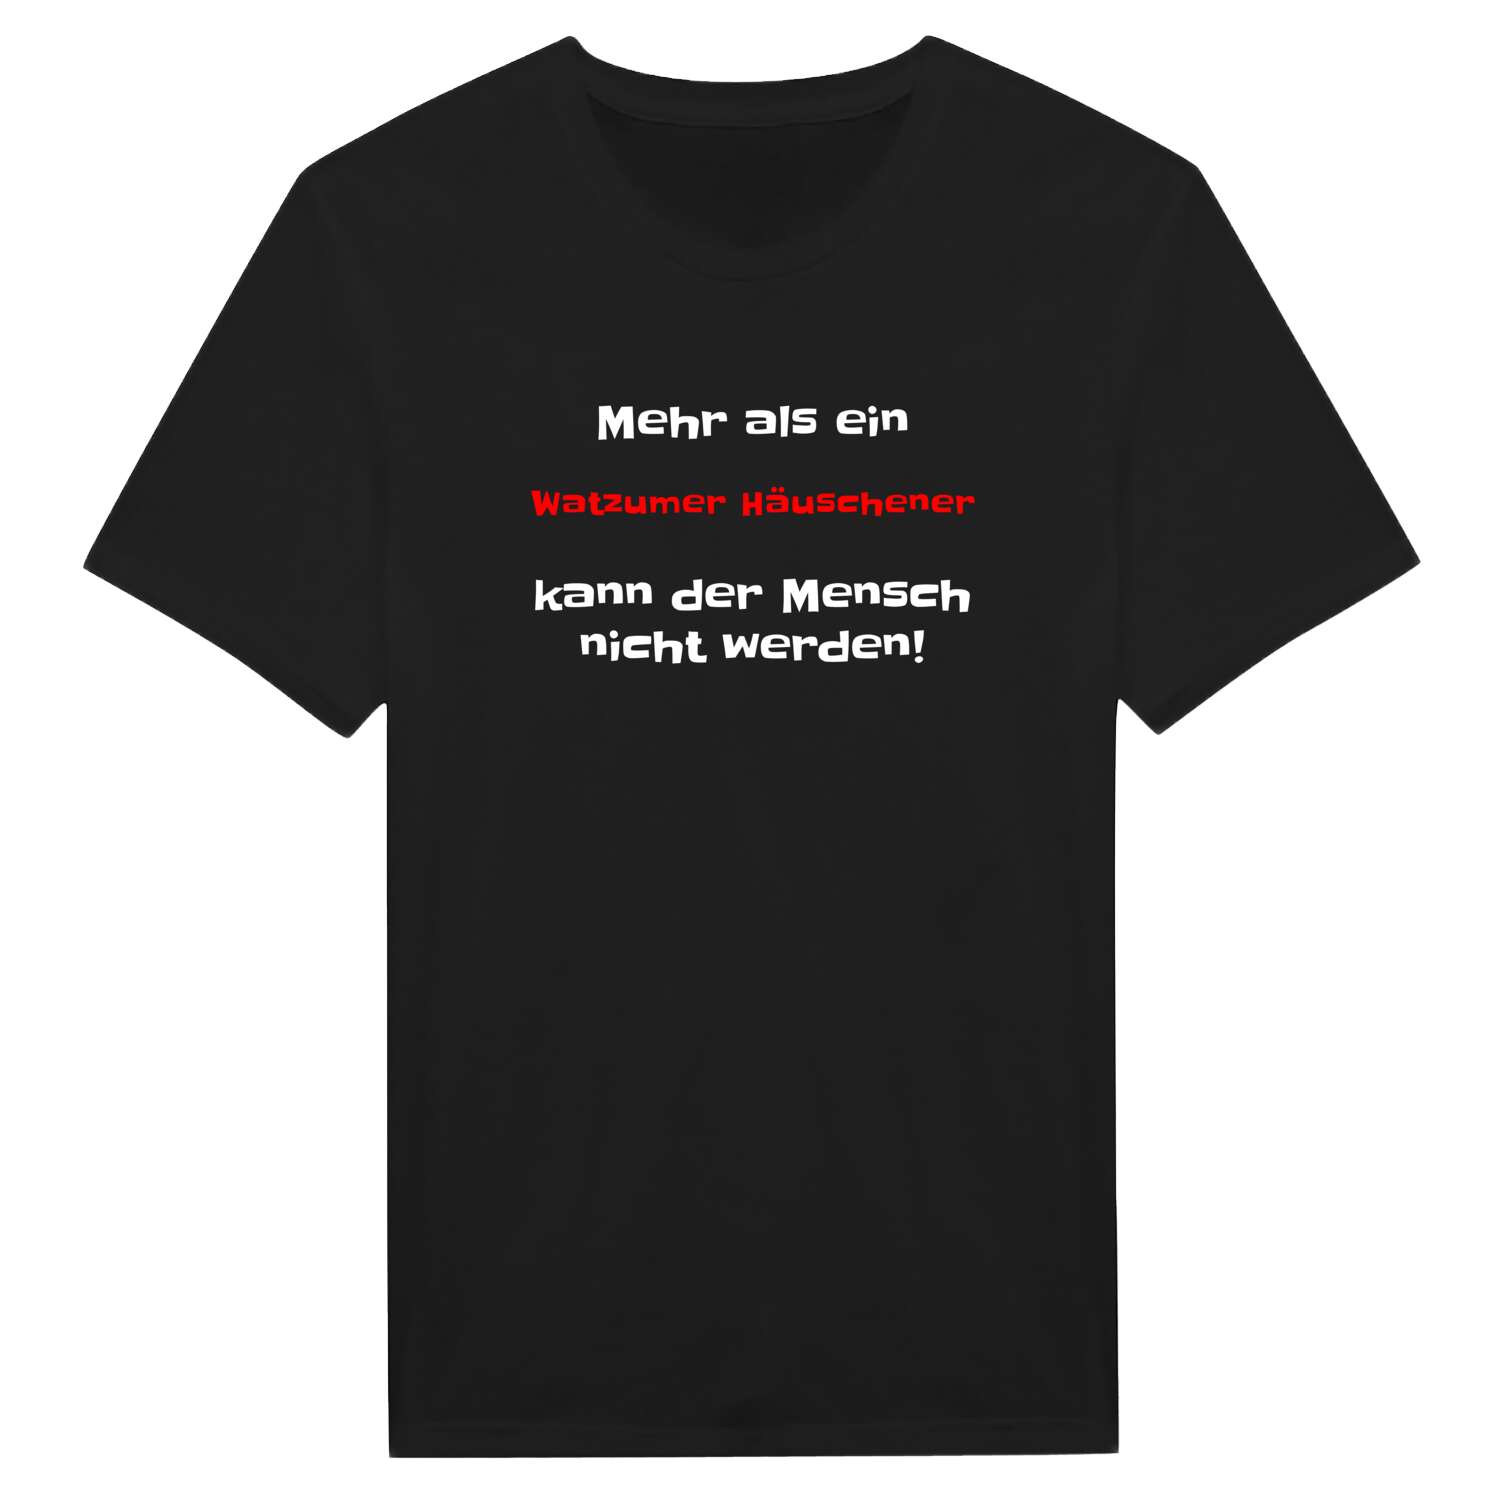 Watzumer Häuschen T-Shirt »Mehr als ein«